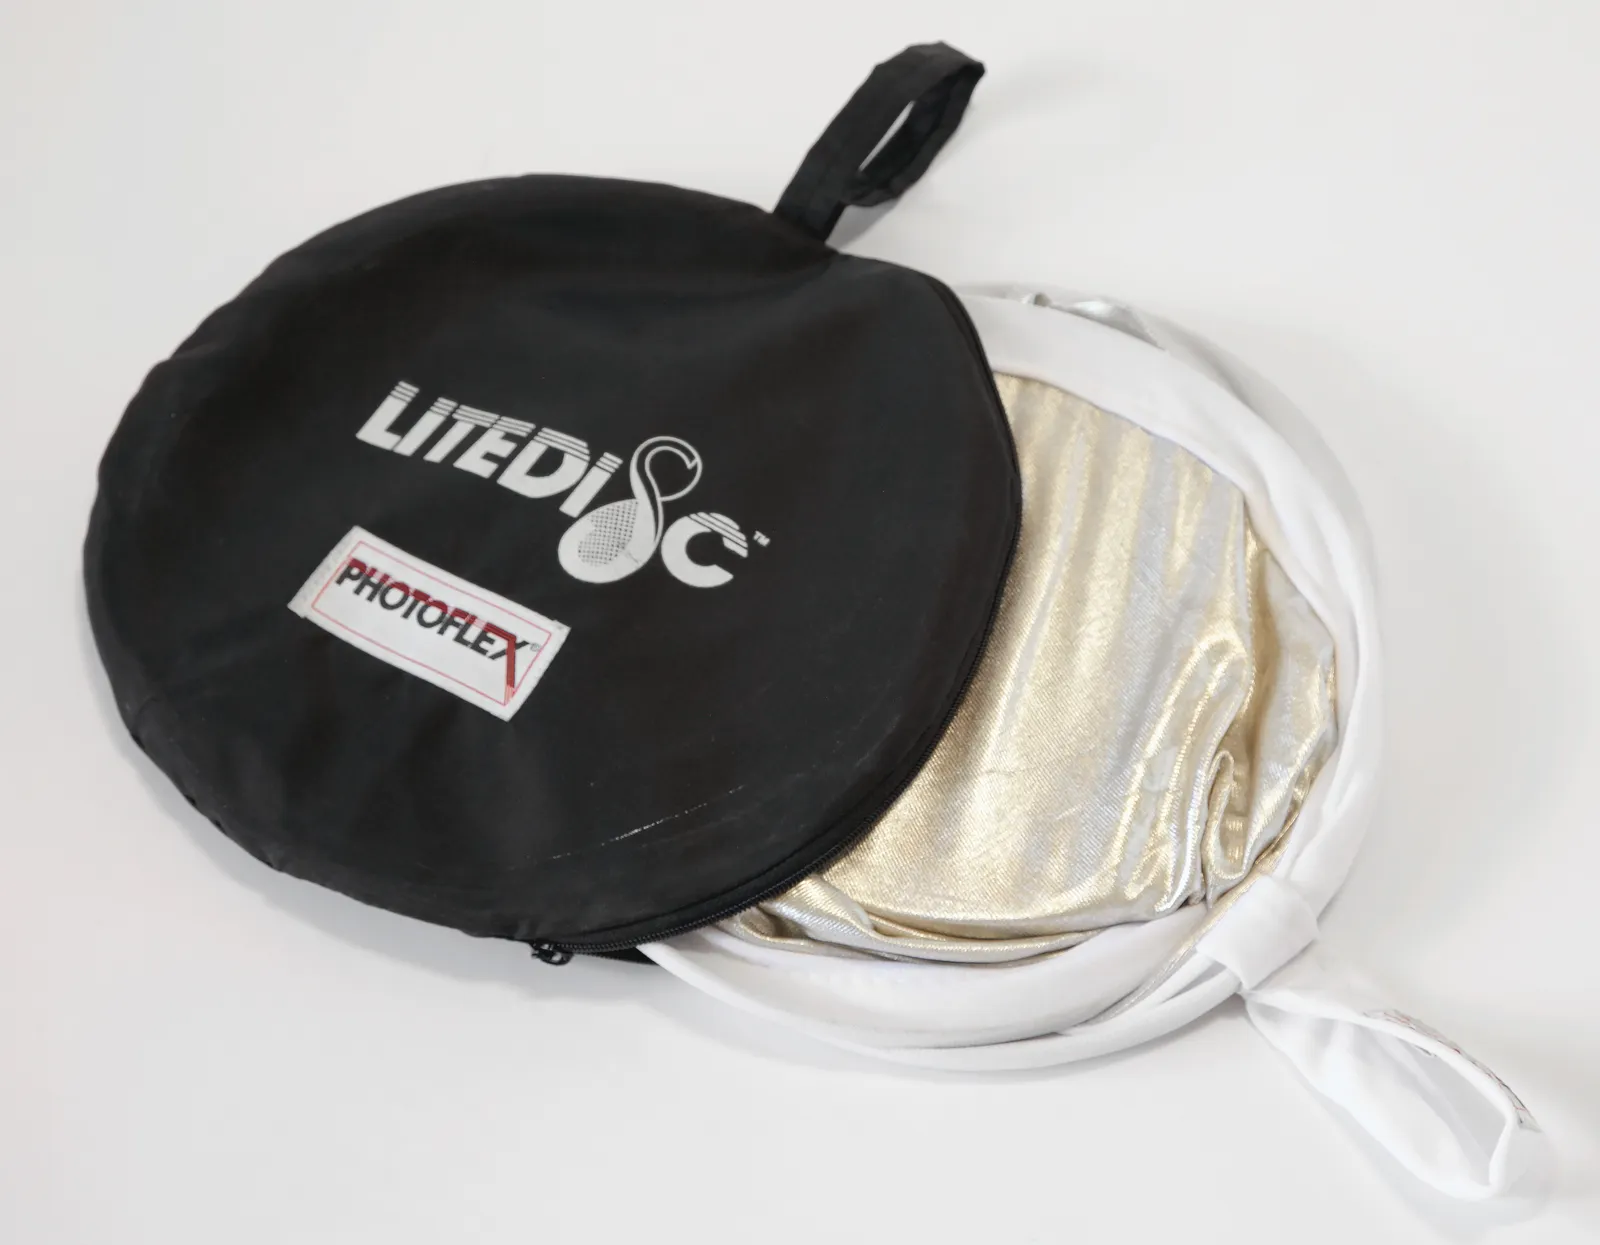 Photoflex Litedisc – 32-inch Light Reflector